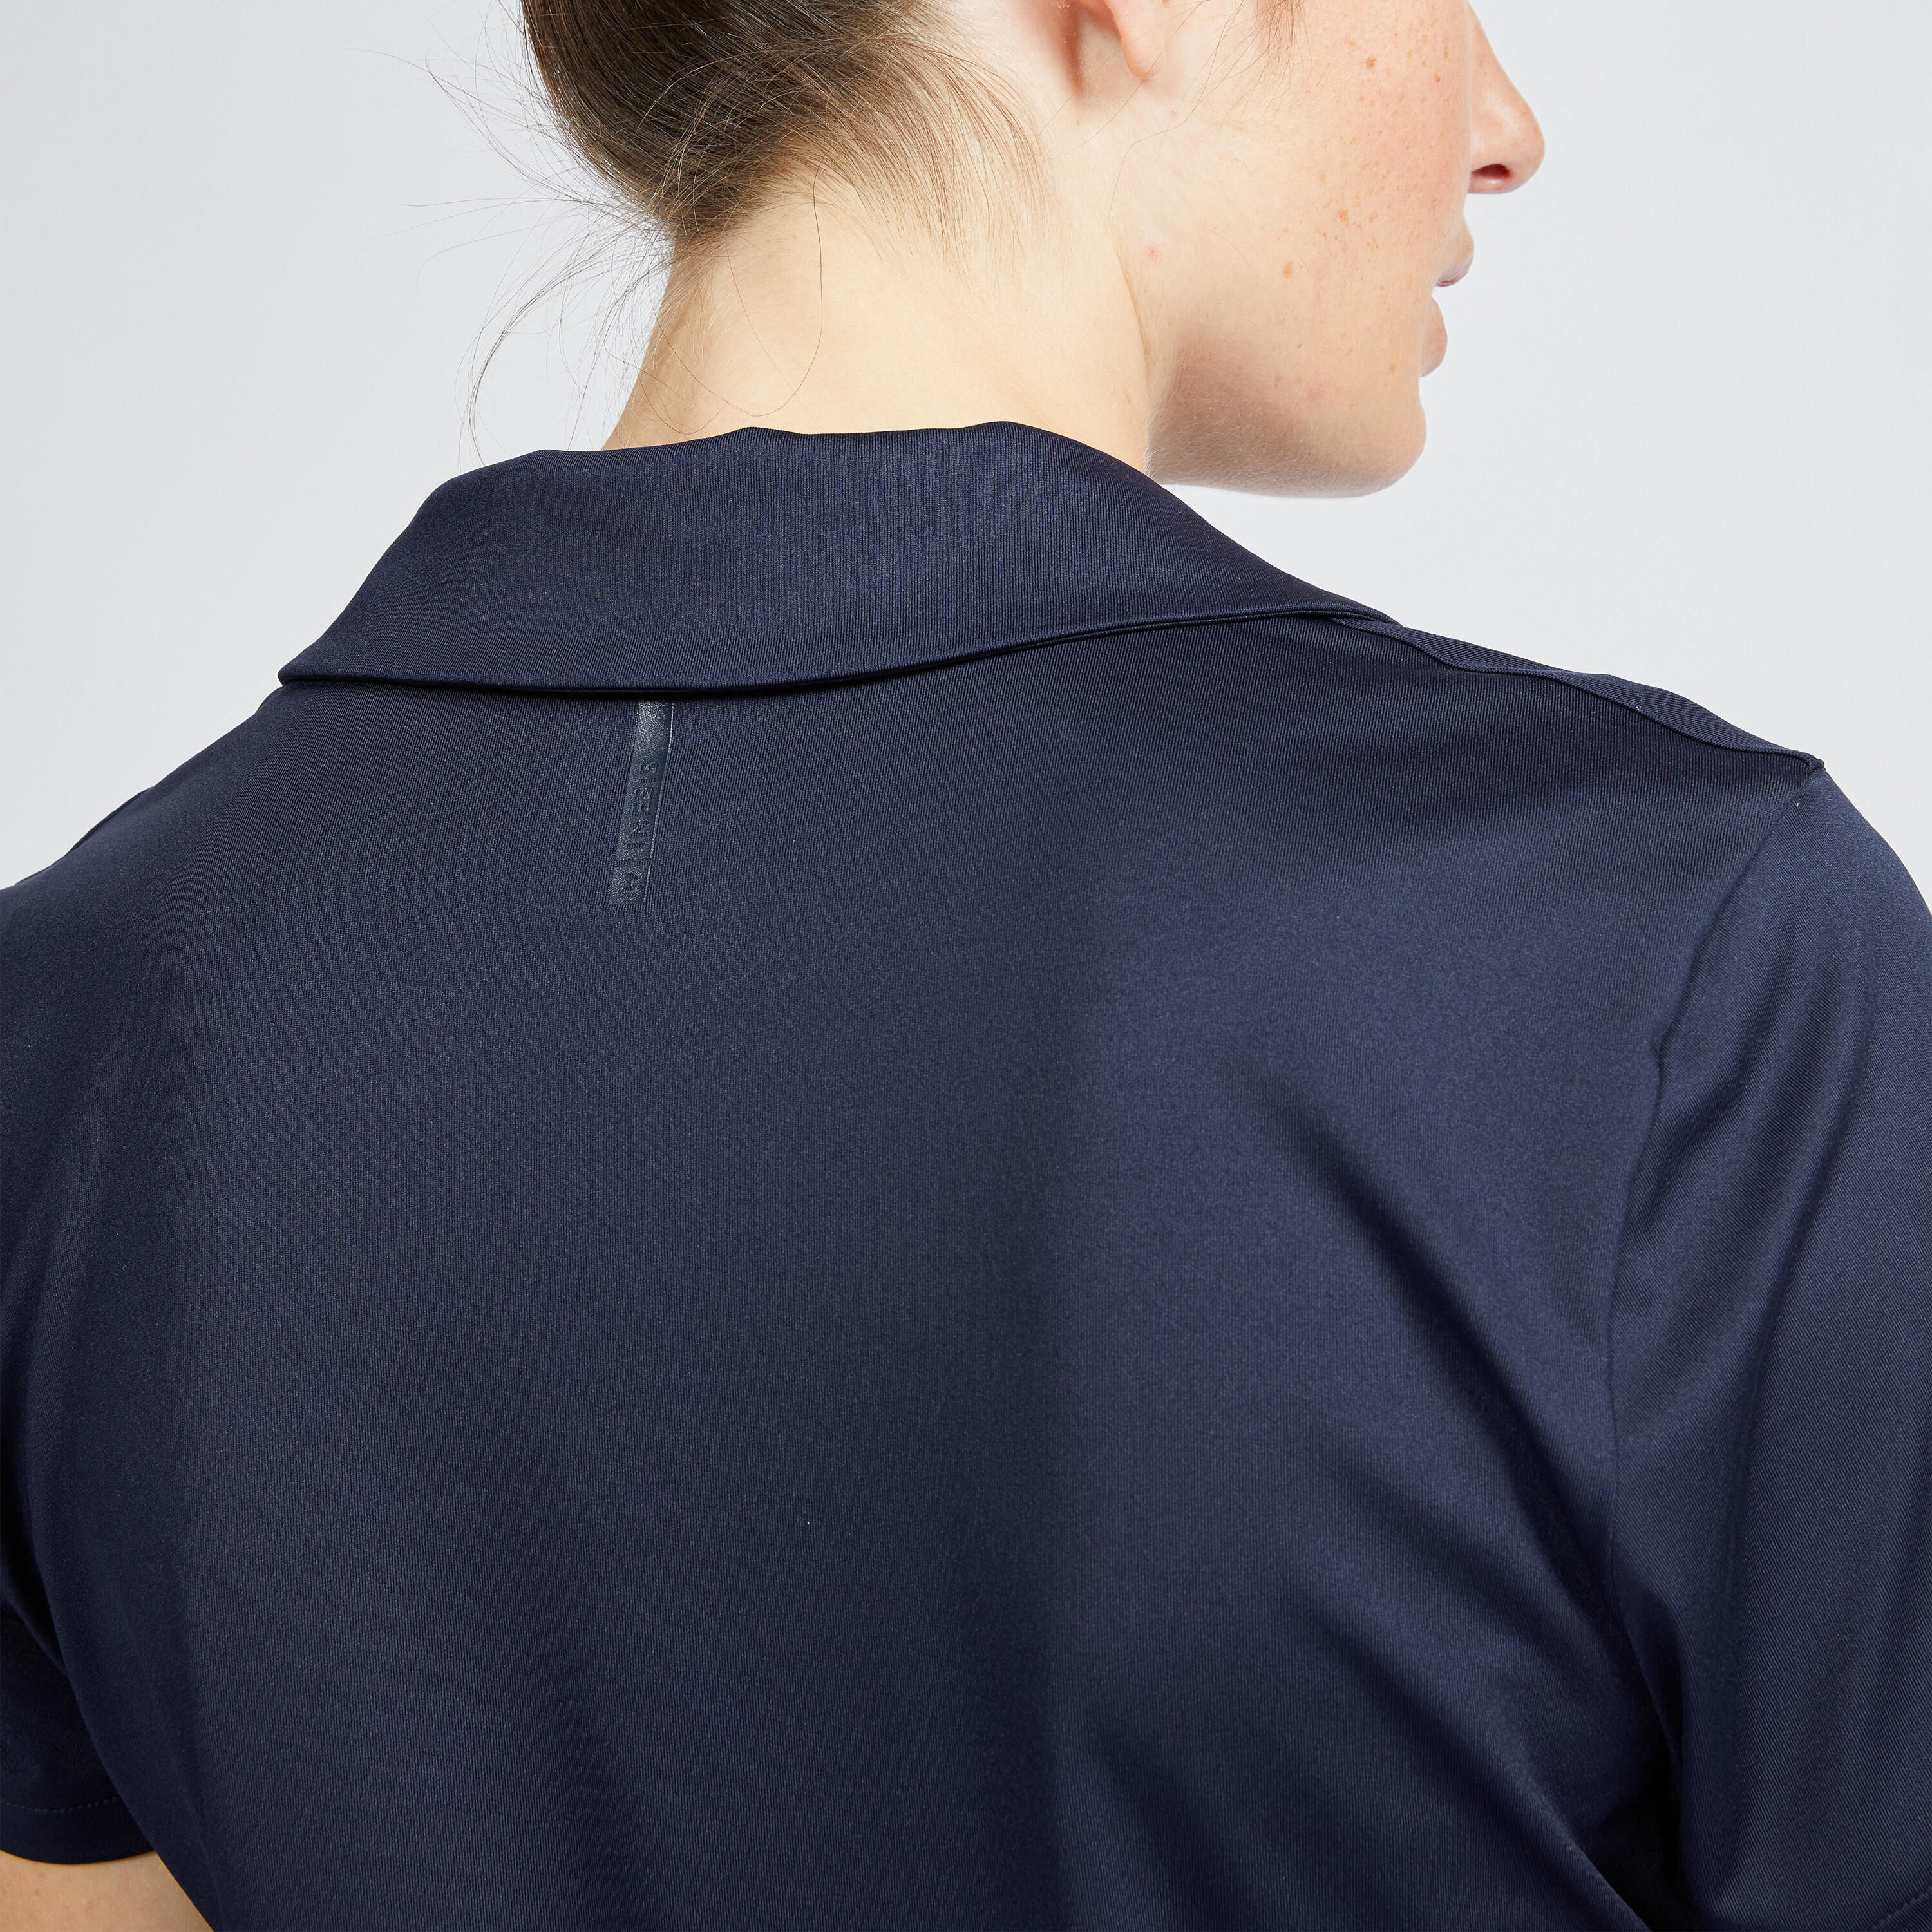 Women's Golf Short-Sleeved Polo Shirt - WW 500 Navy Blue 4/6